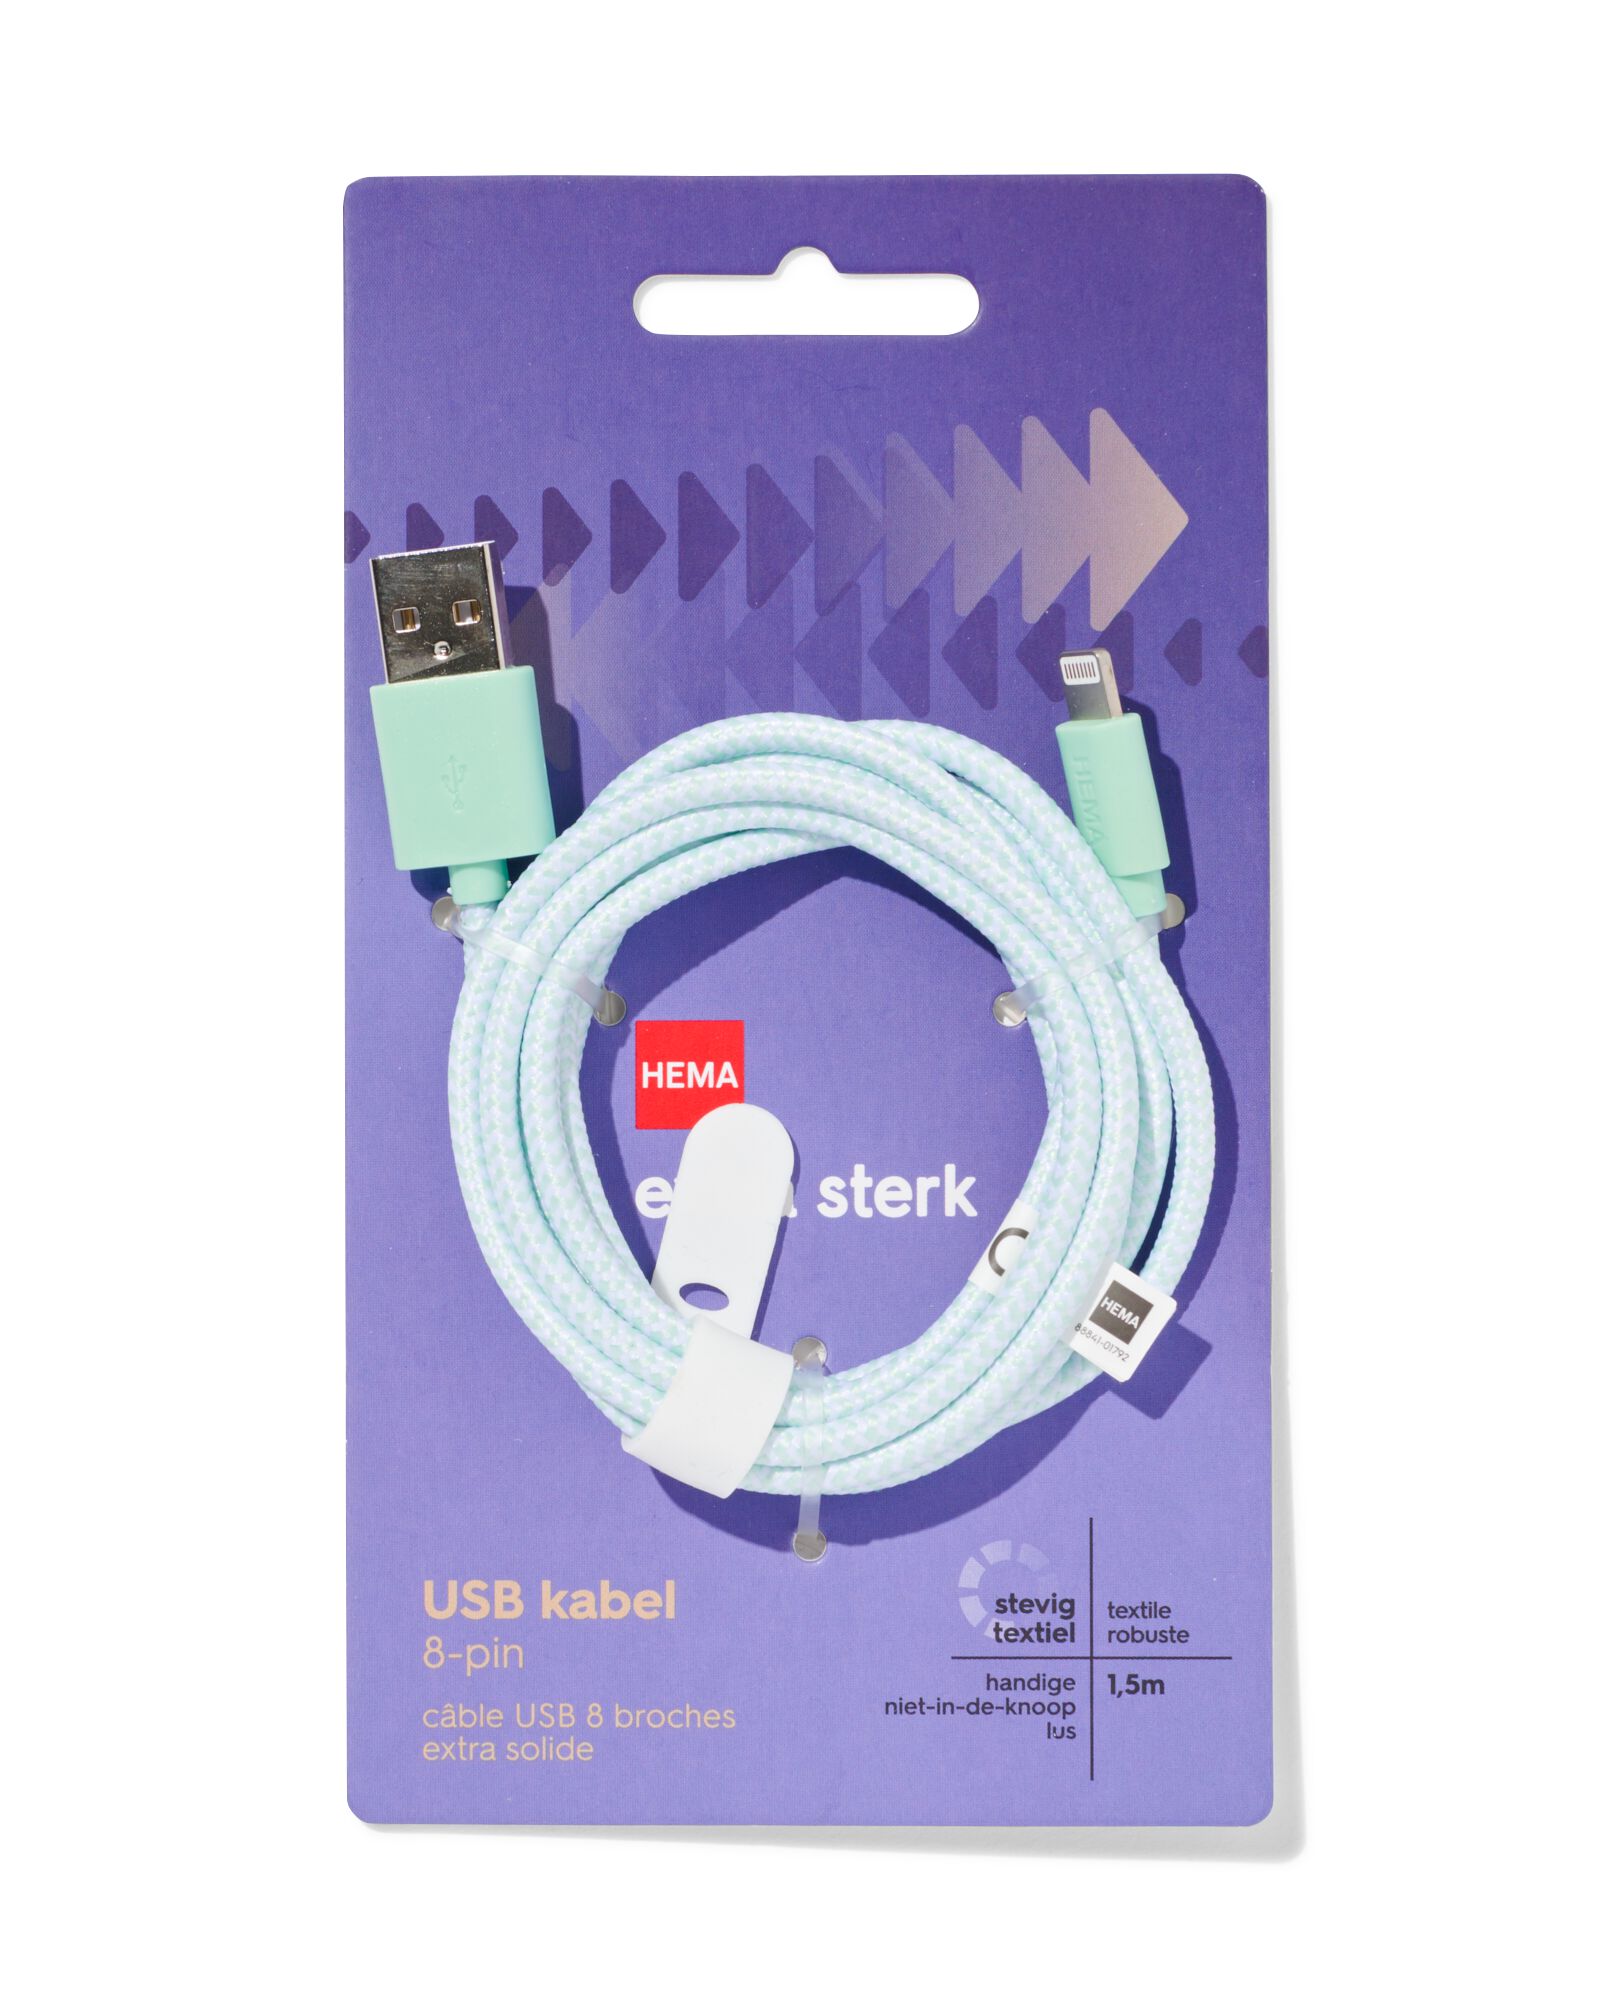 USB laadkabel 8-pin 1.5m - HEMA